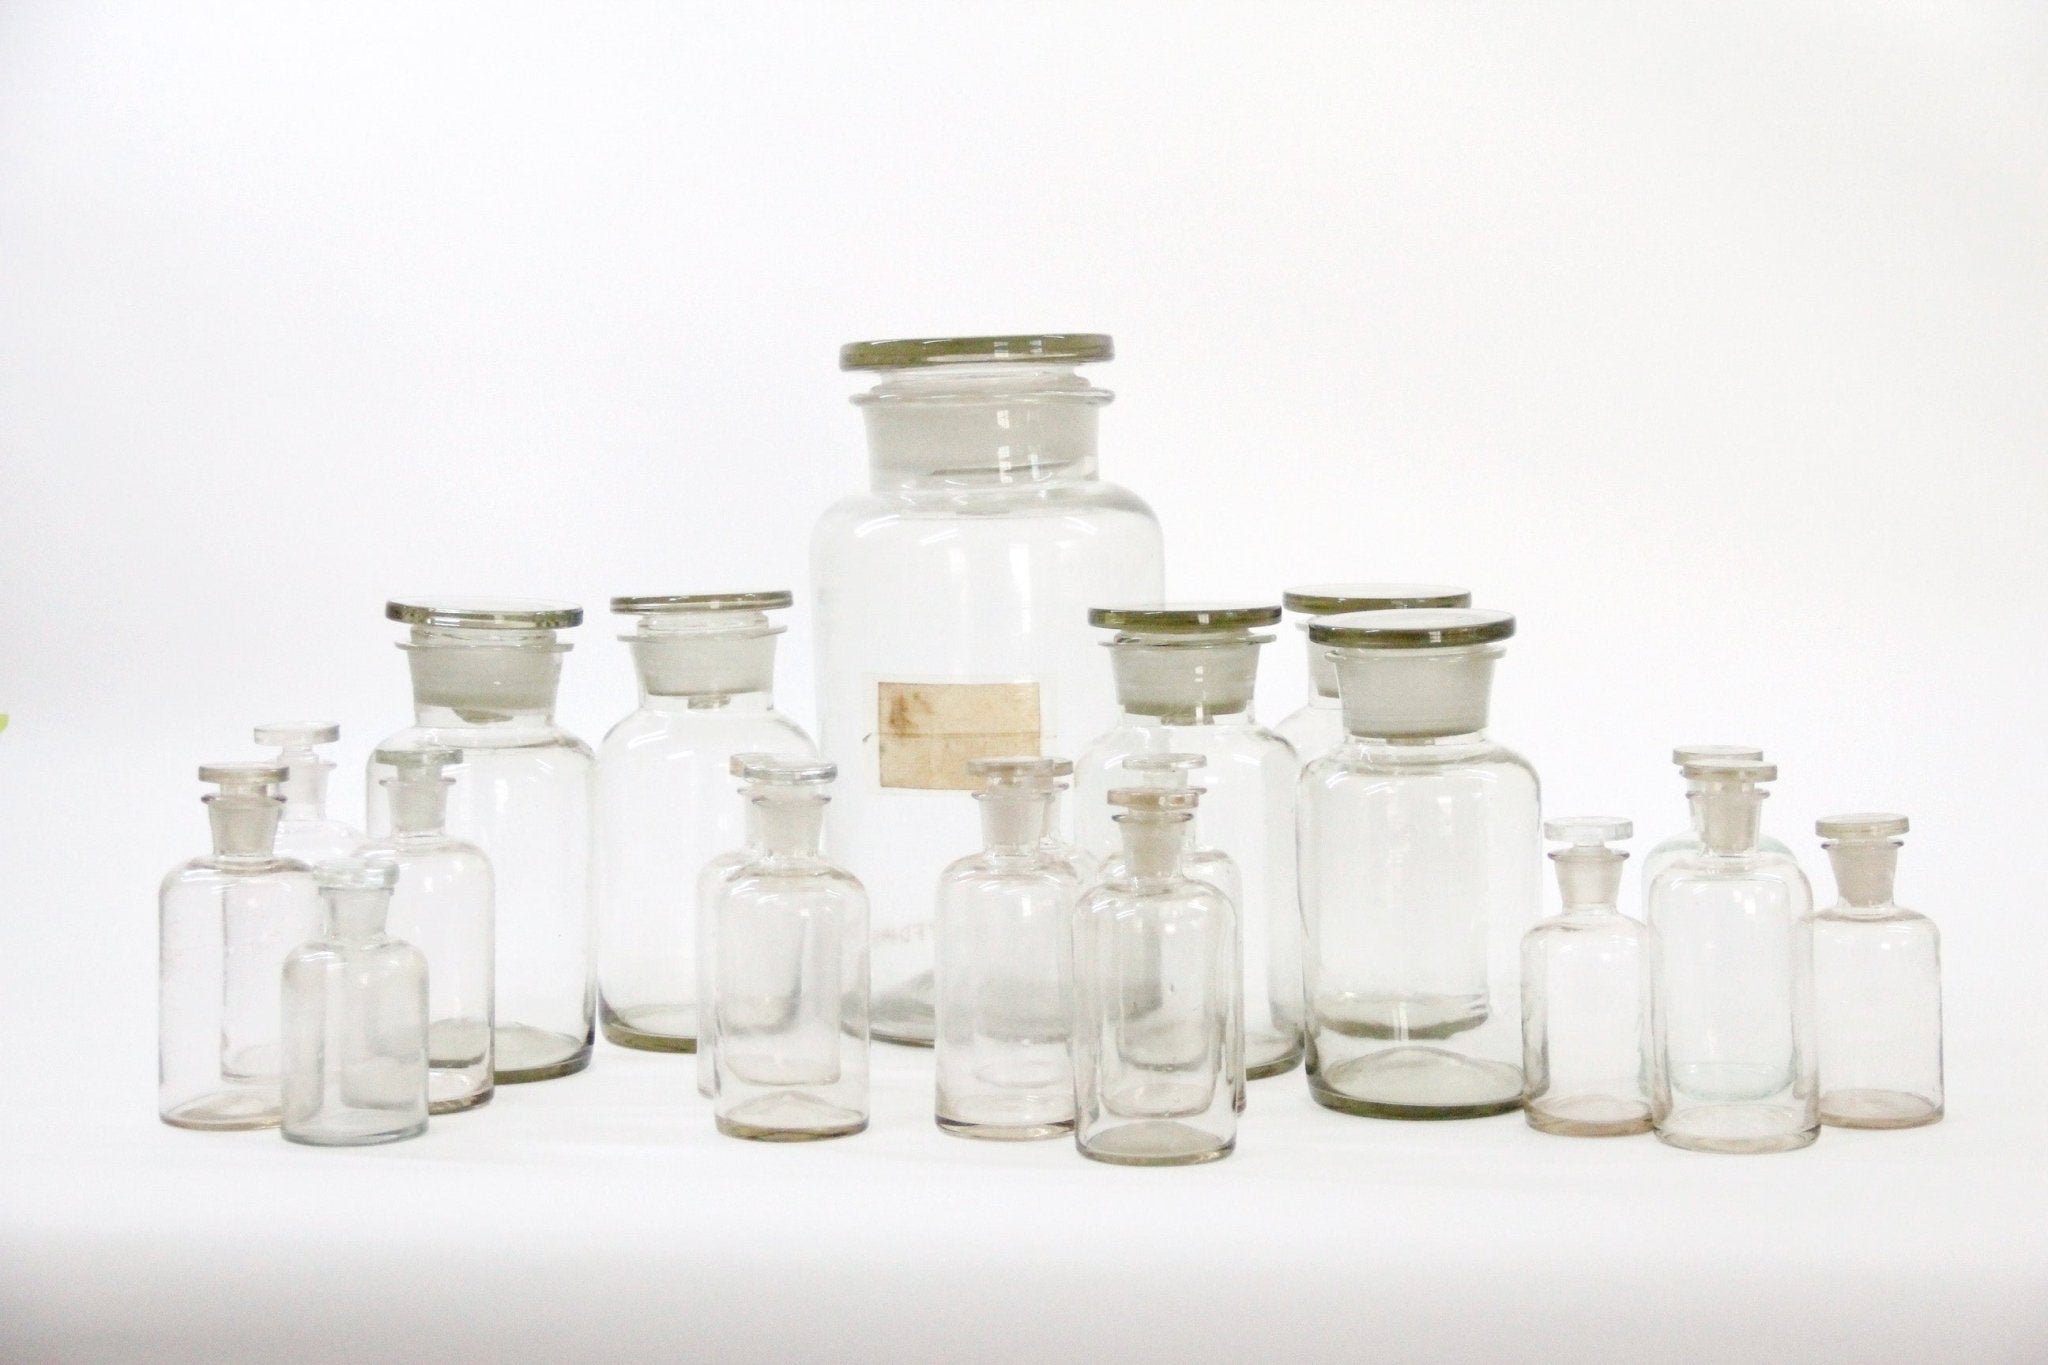 Antique European Apothecary Bottle | Pharmacy Jar - Debra Hall Lifestyle